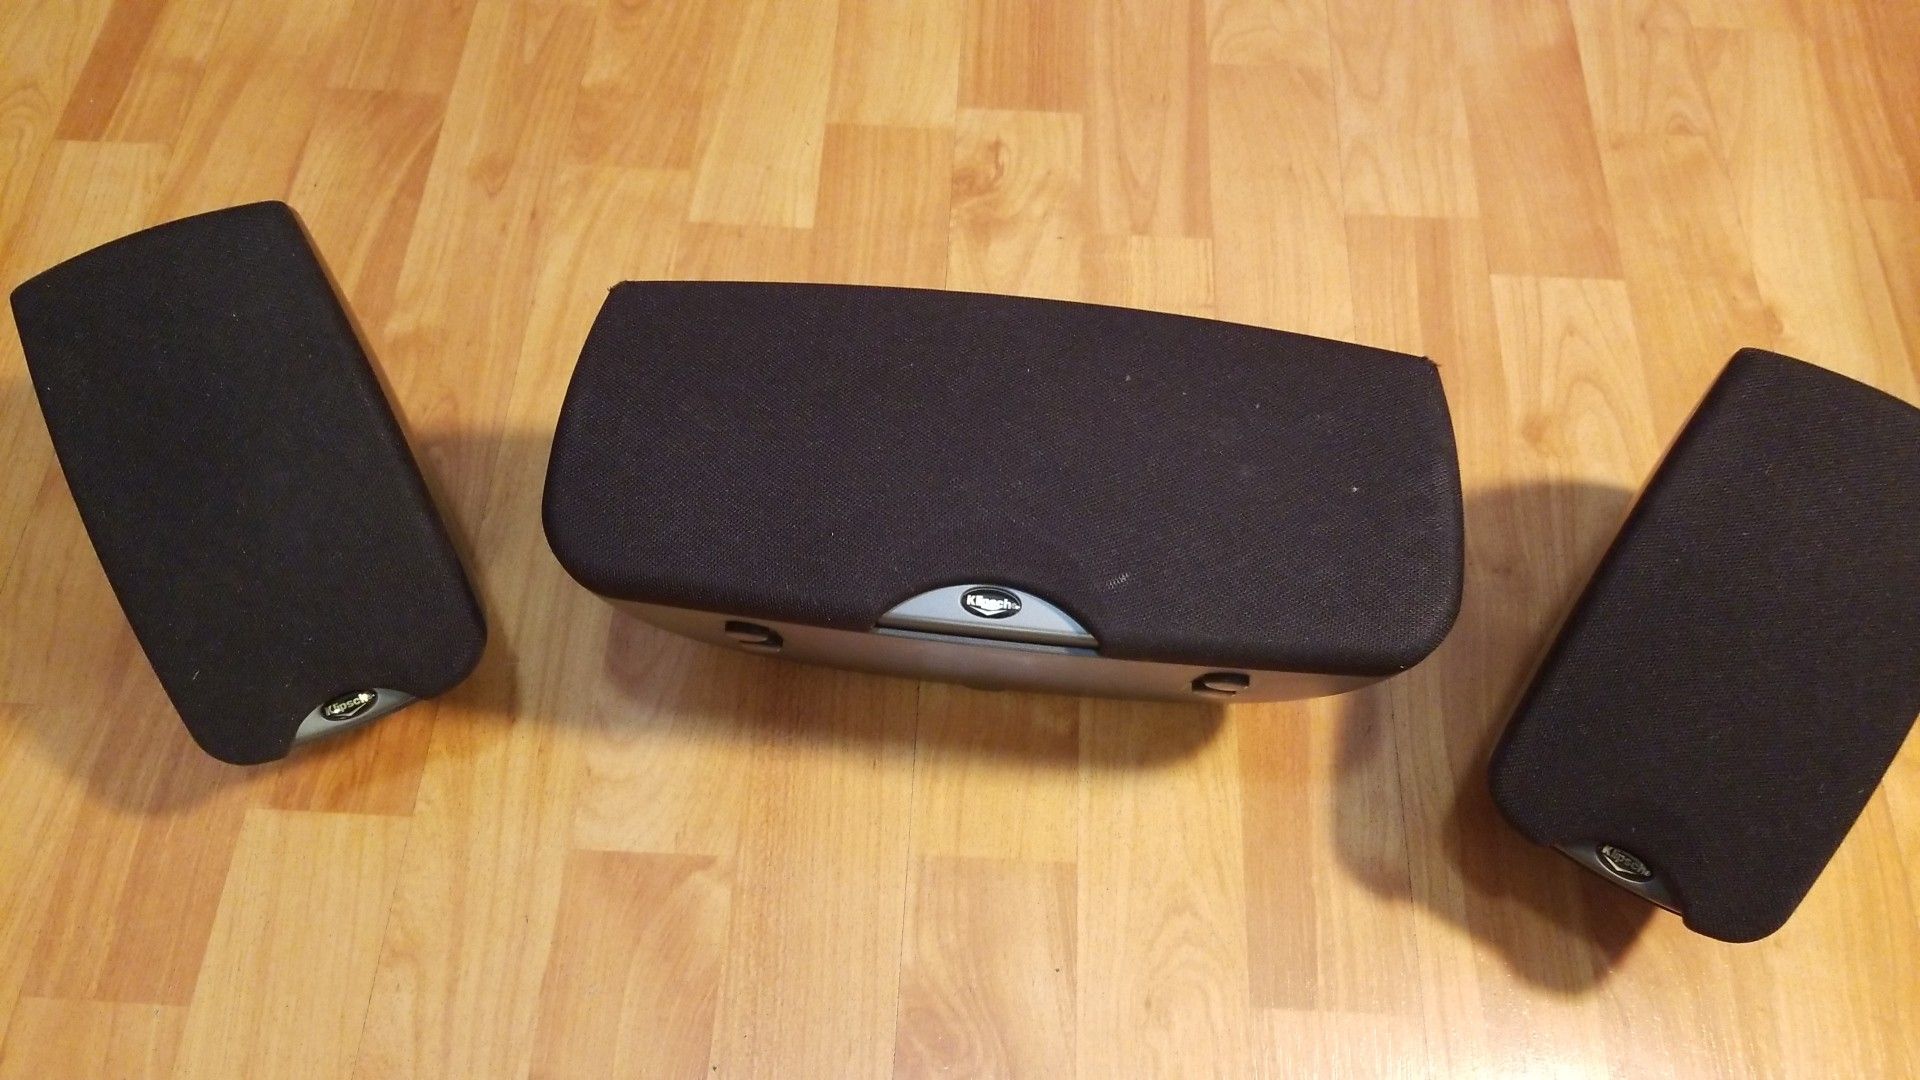 Klipsch speaker set